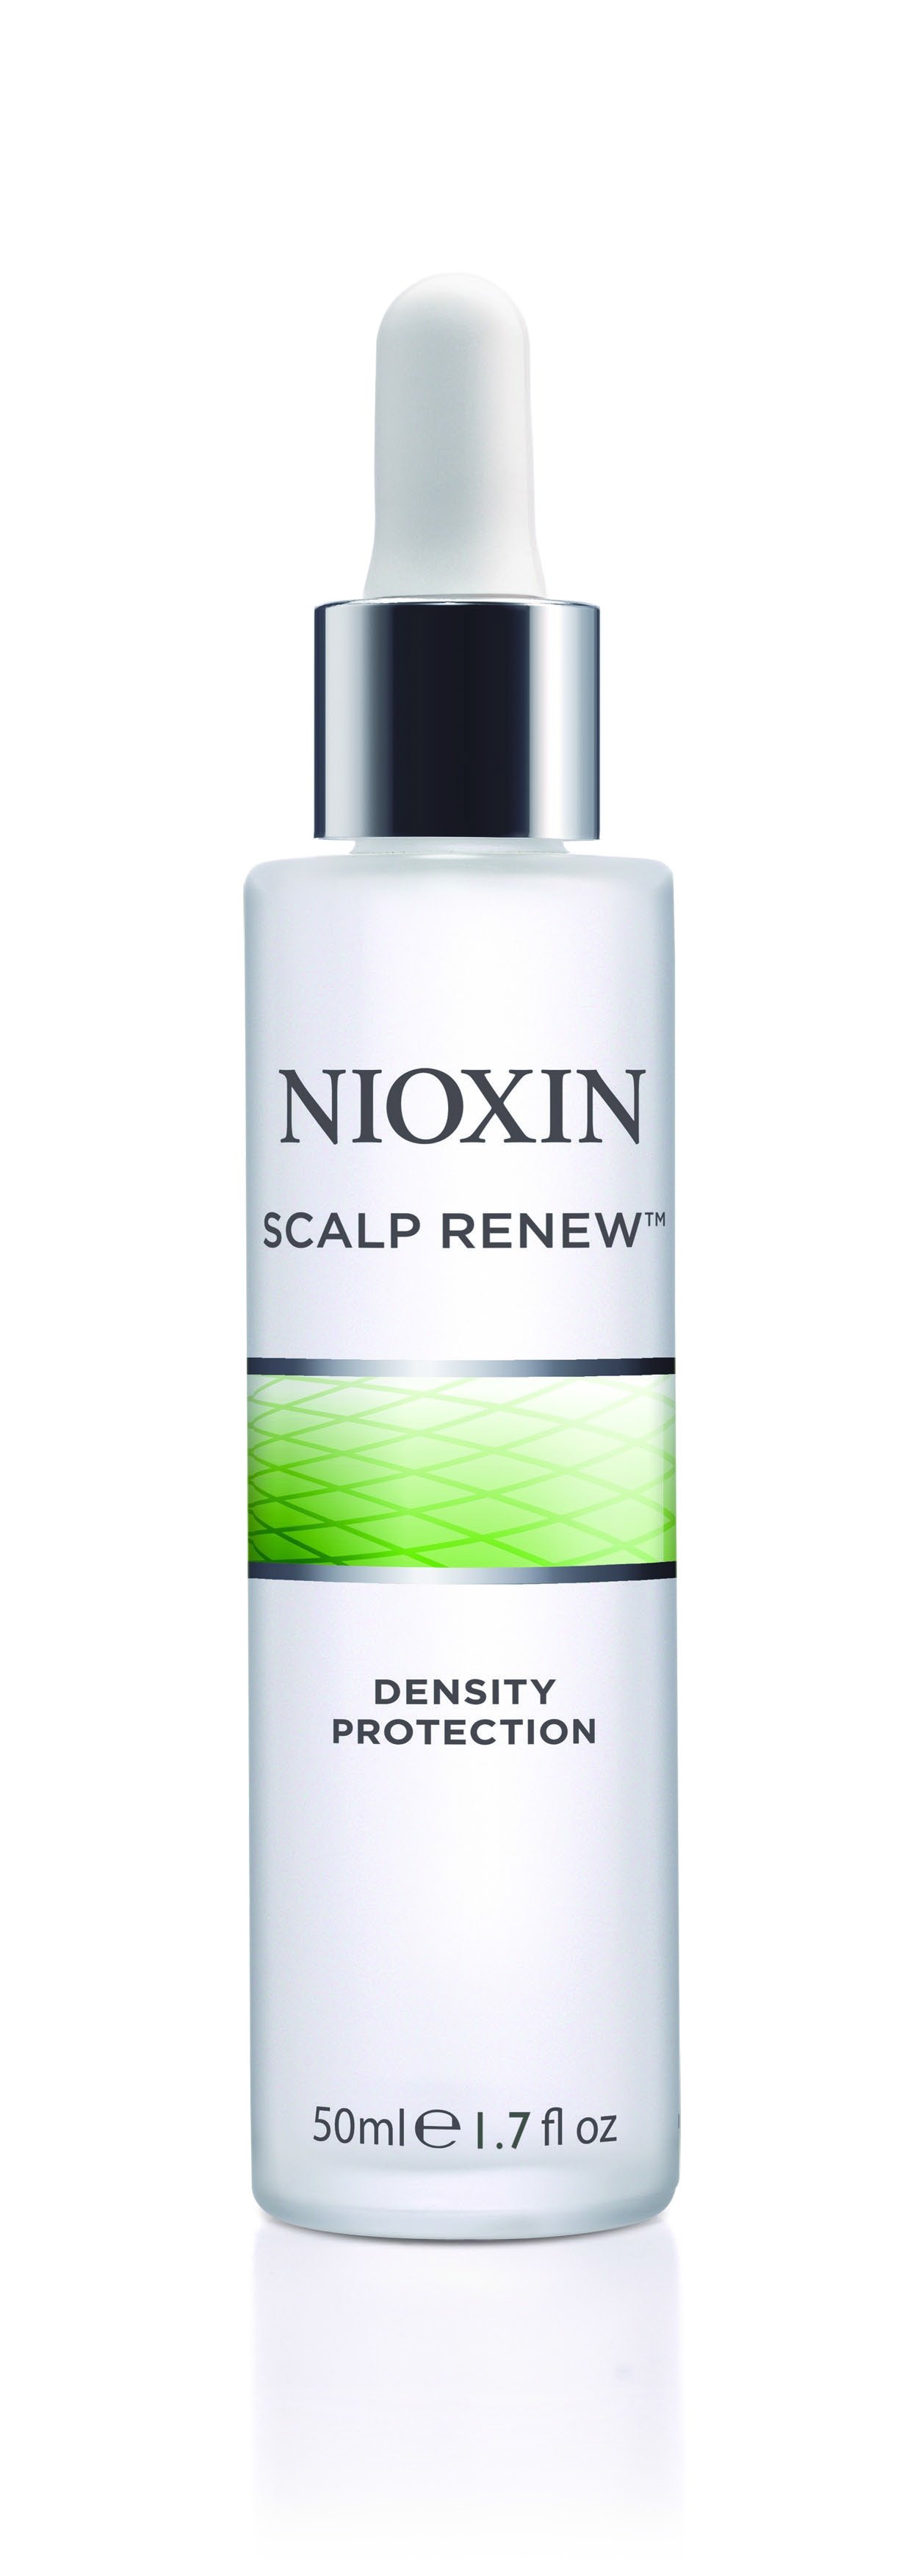 Сыворотки для волос:  NIOXIN -  Сыворотка для предотвращения ломкости волос (45 мл)